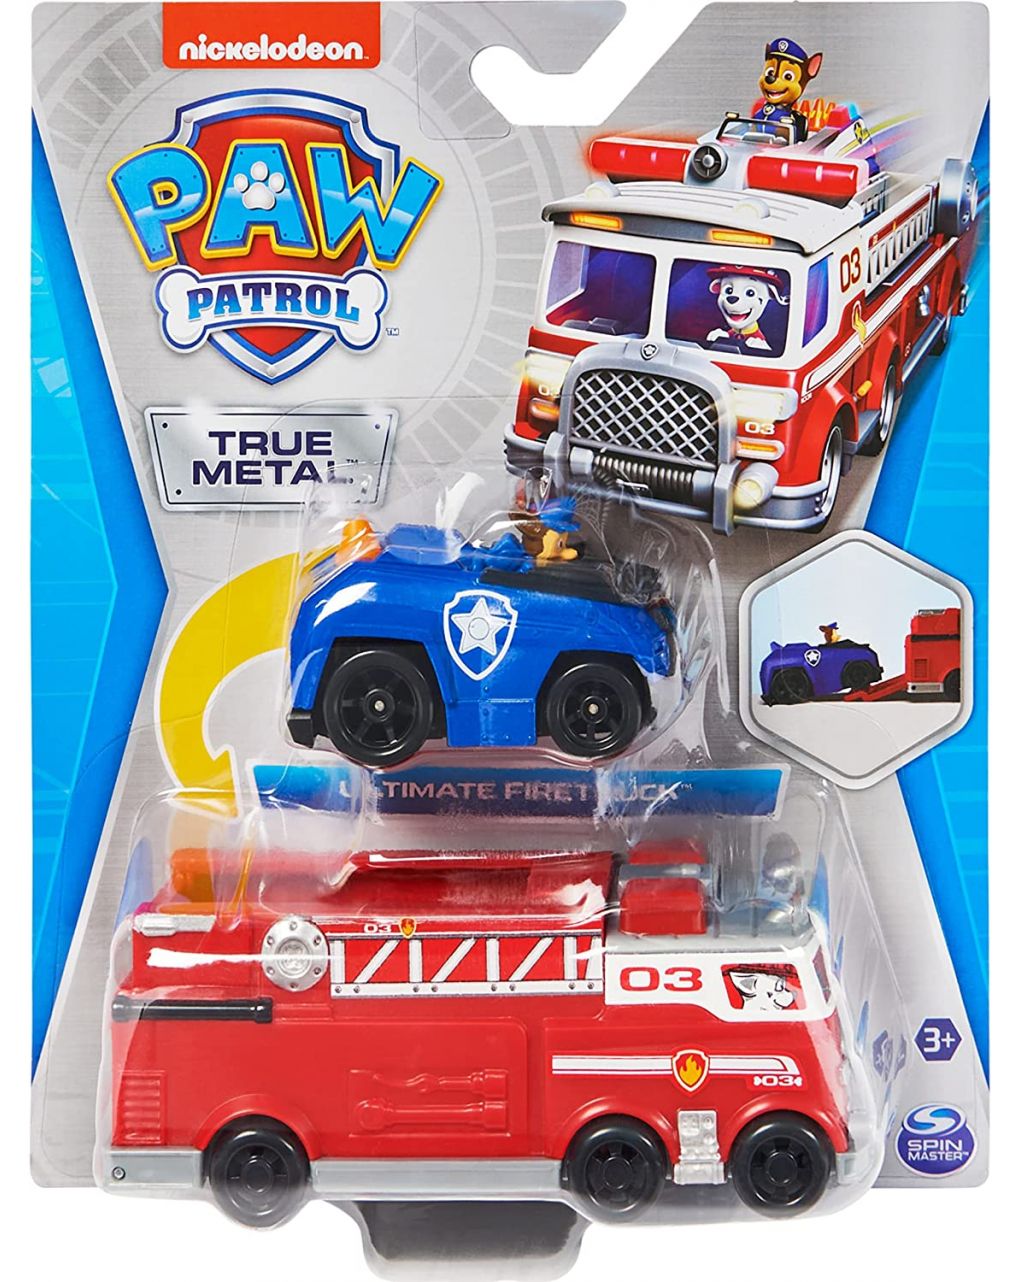 Camión de bomberos y coche patrulla true metal - paw patrol - Paw Patrol